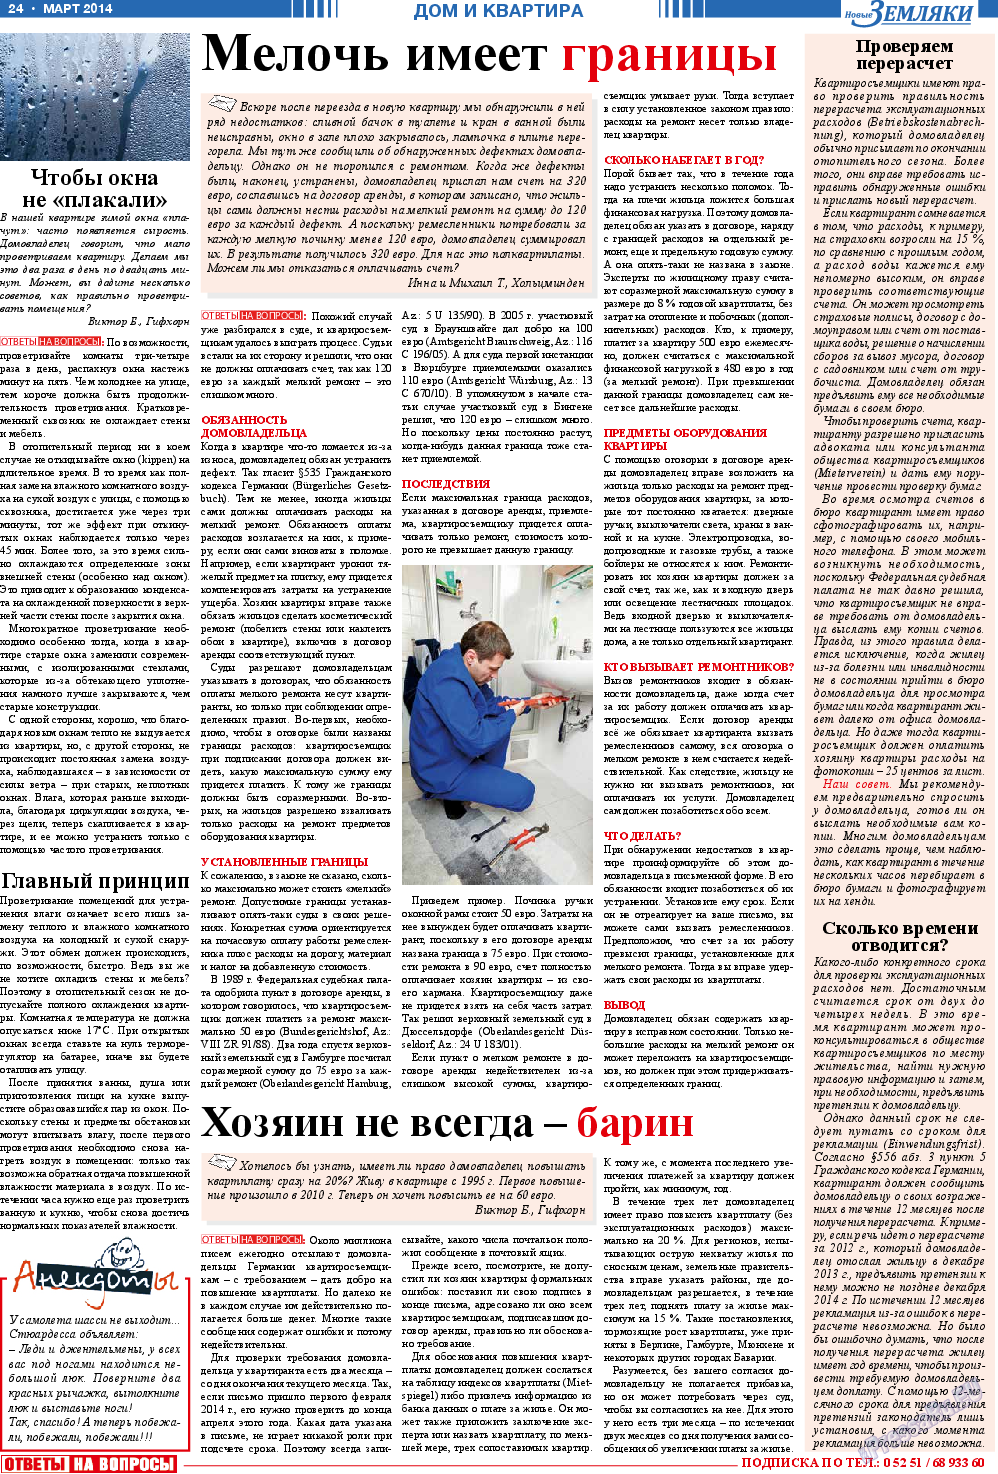 Новые Земляки, газета. 2014 №3 стр.24